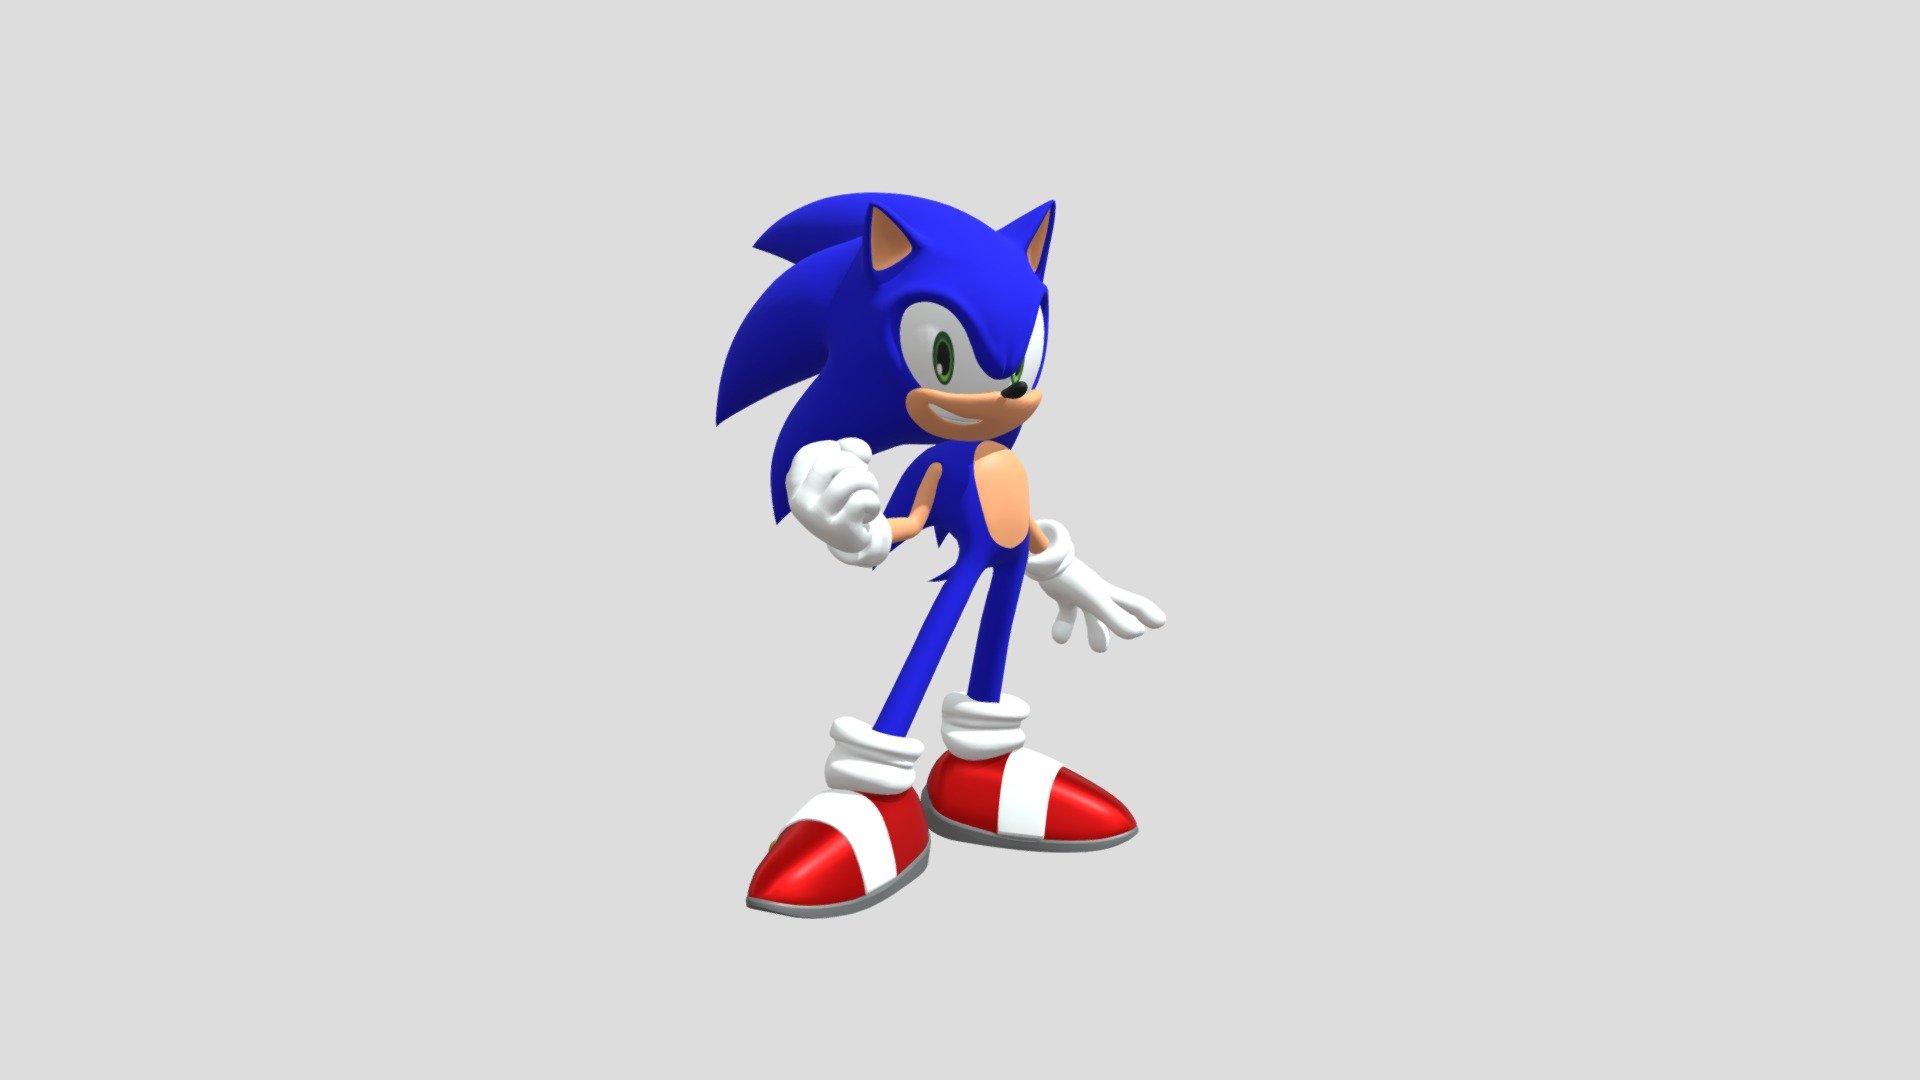 OFICIAL! NOVO JOGO SONIC 3D PARA CELULAR  Sonic Dream Team react e análise  